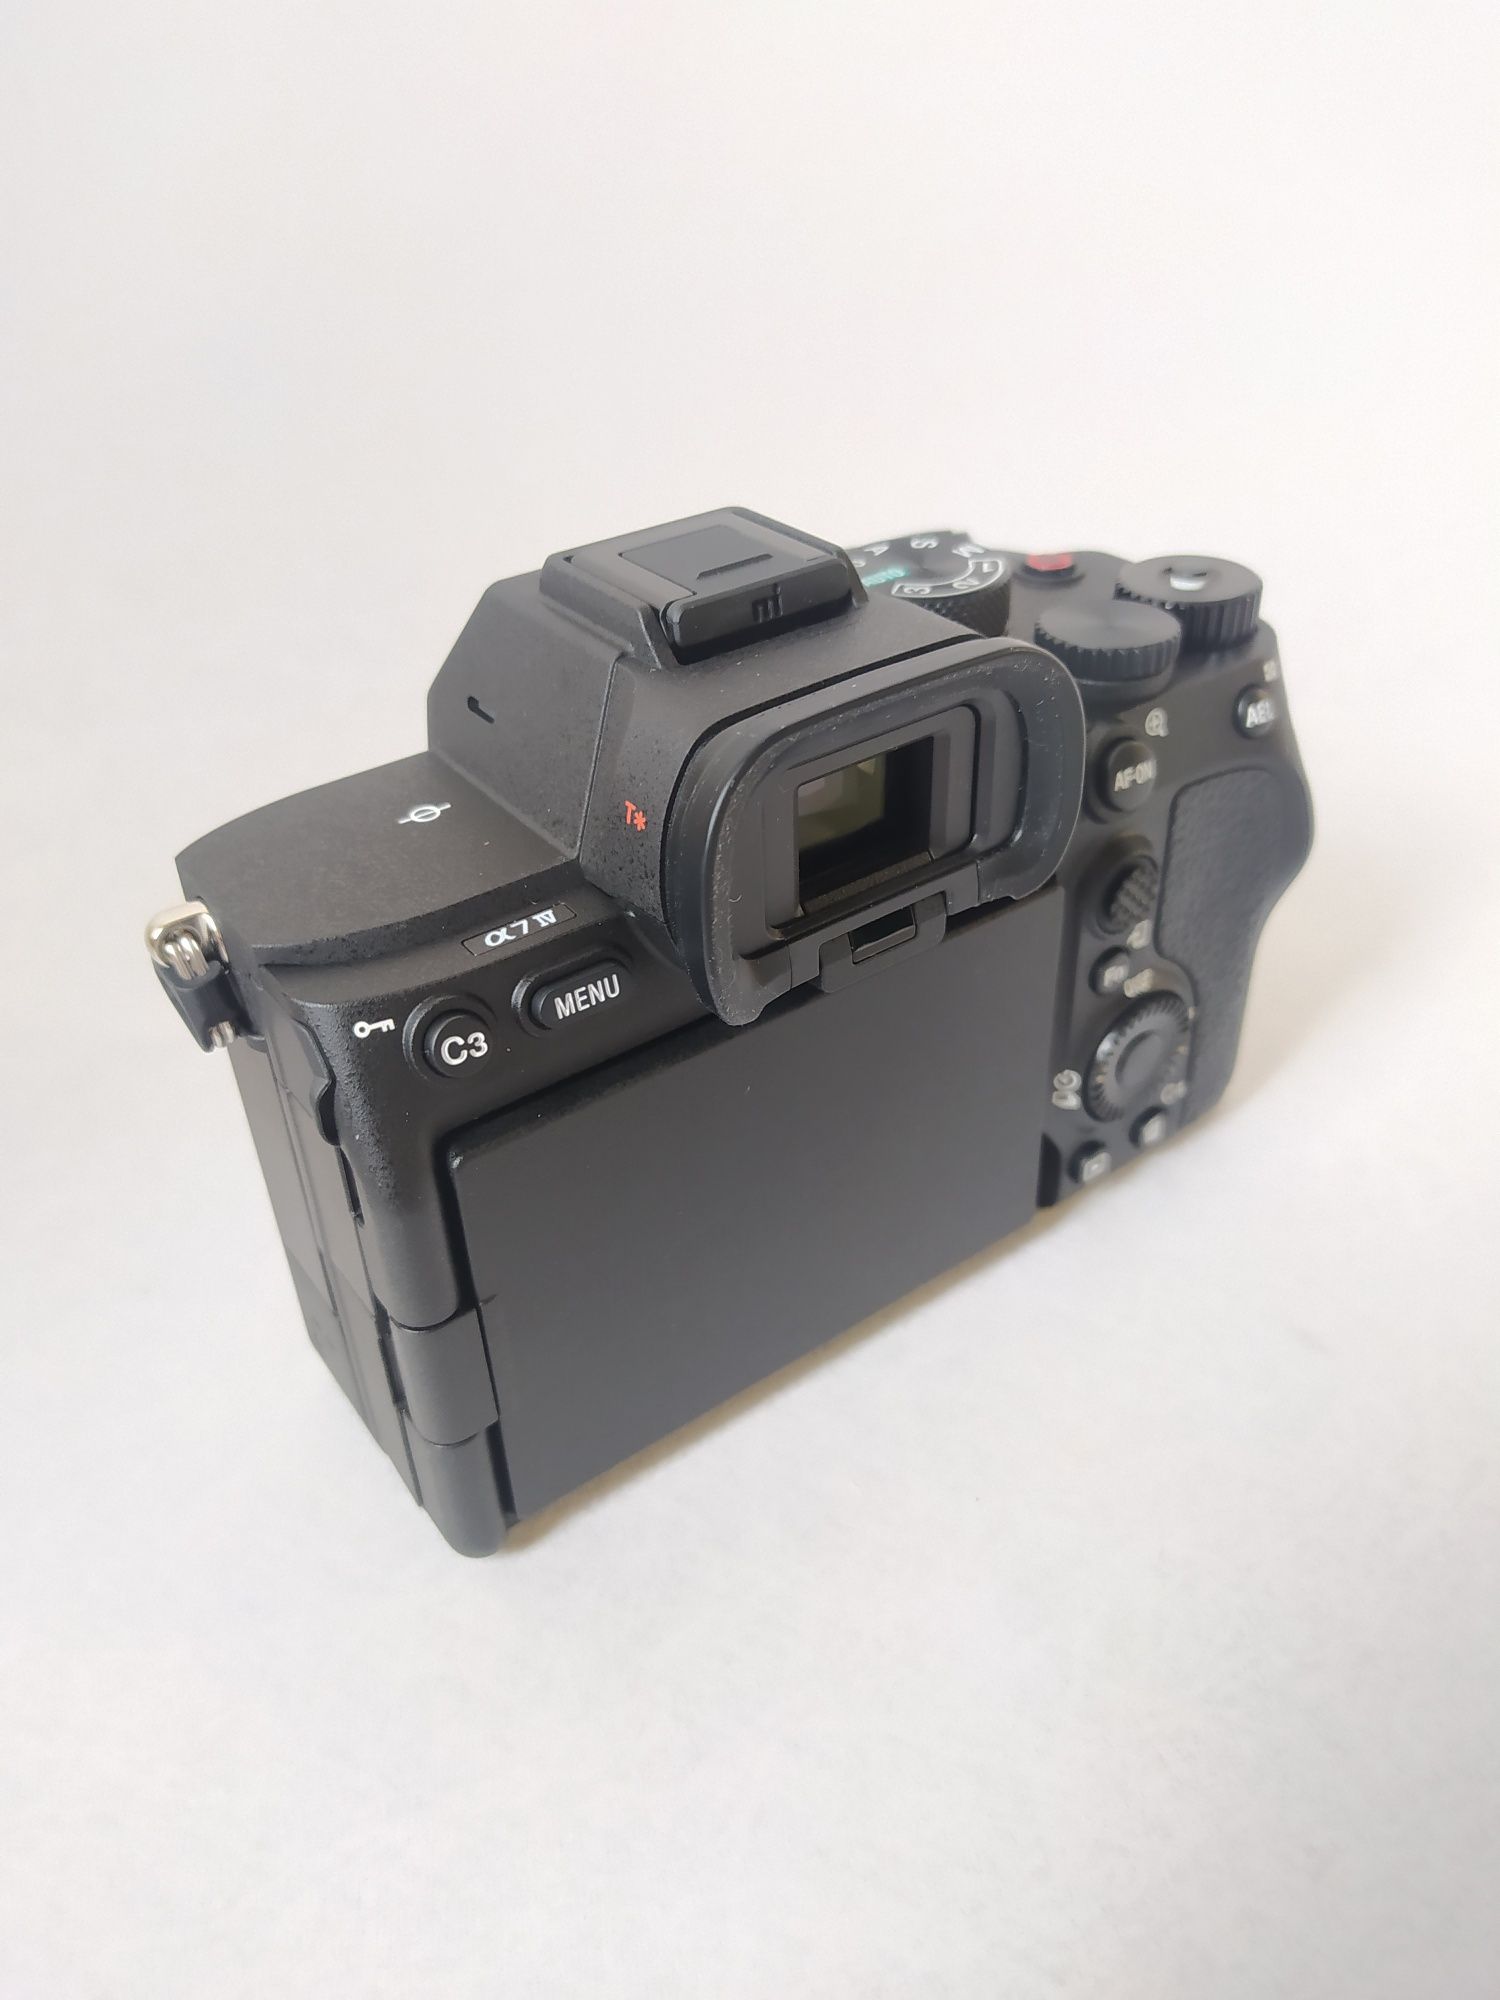 Фотоапарат Sony Alpha A7 IV kit (28-70mm)